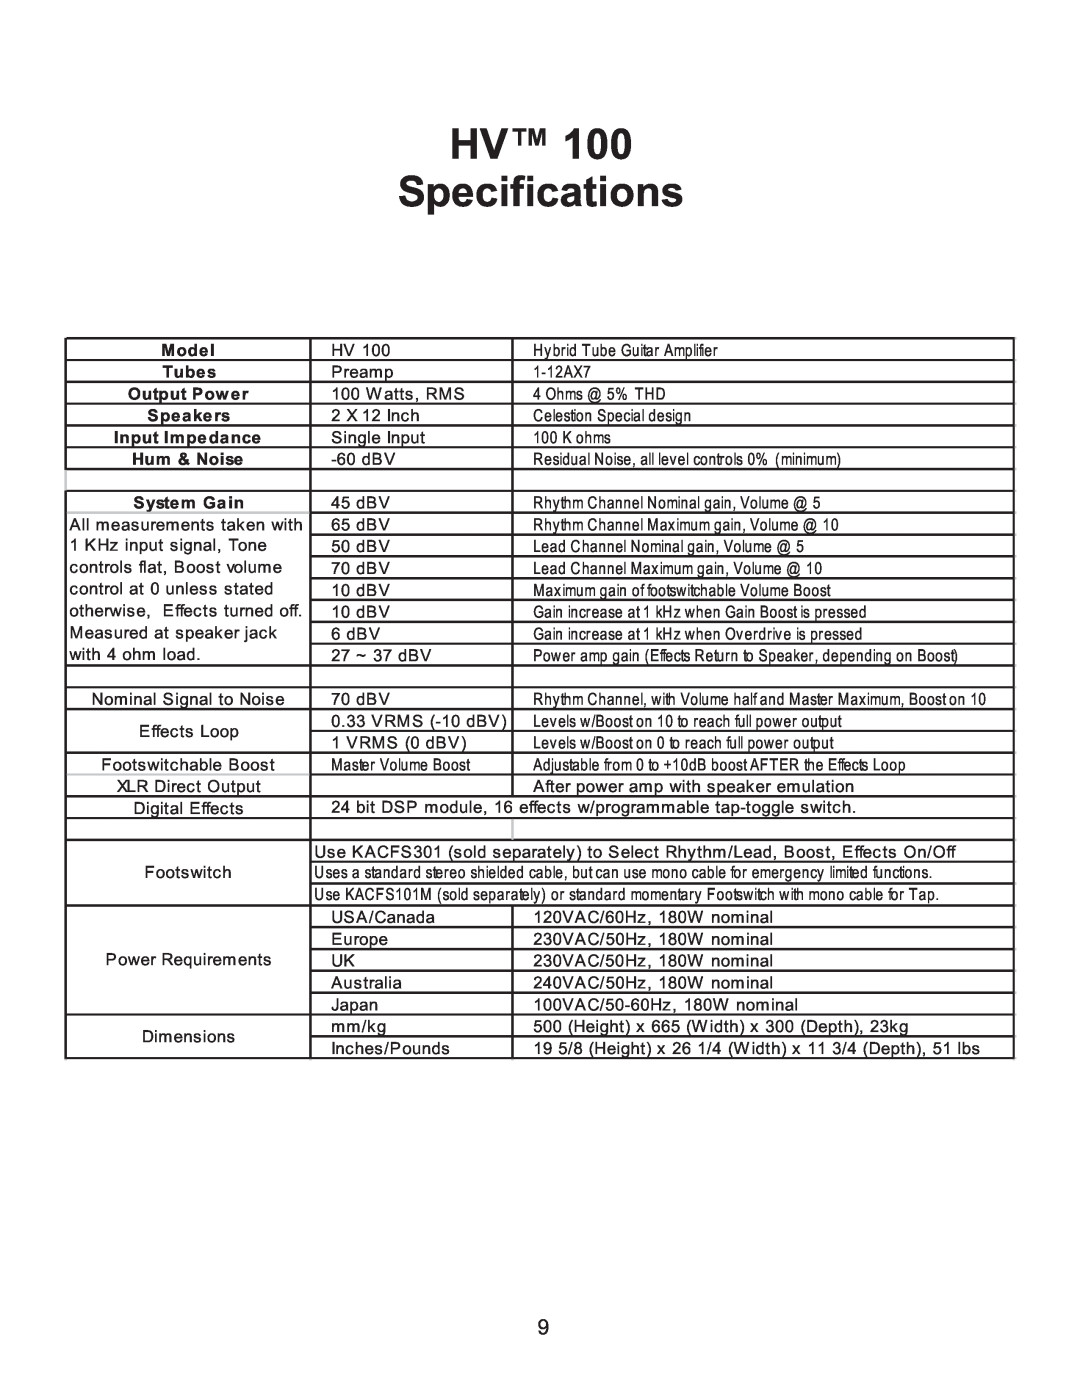 Kustom HV 100TM owner manual HV Specifications, Mode l, Hum & Noise 